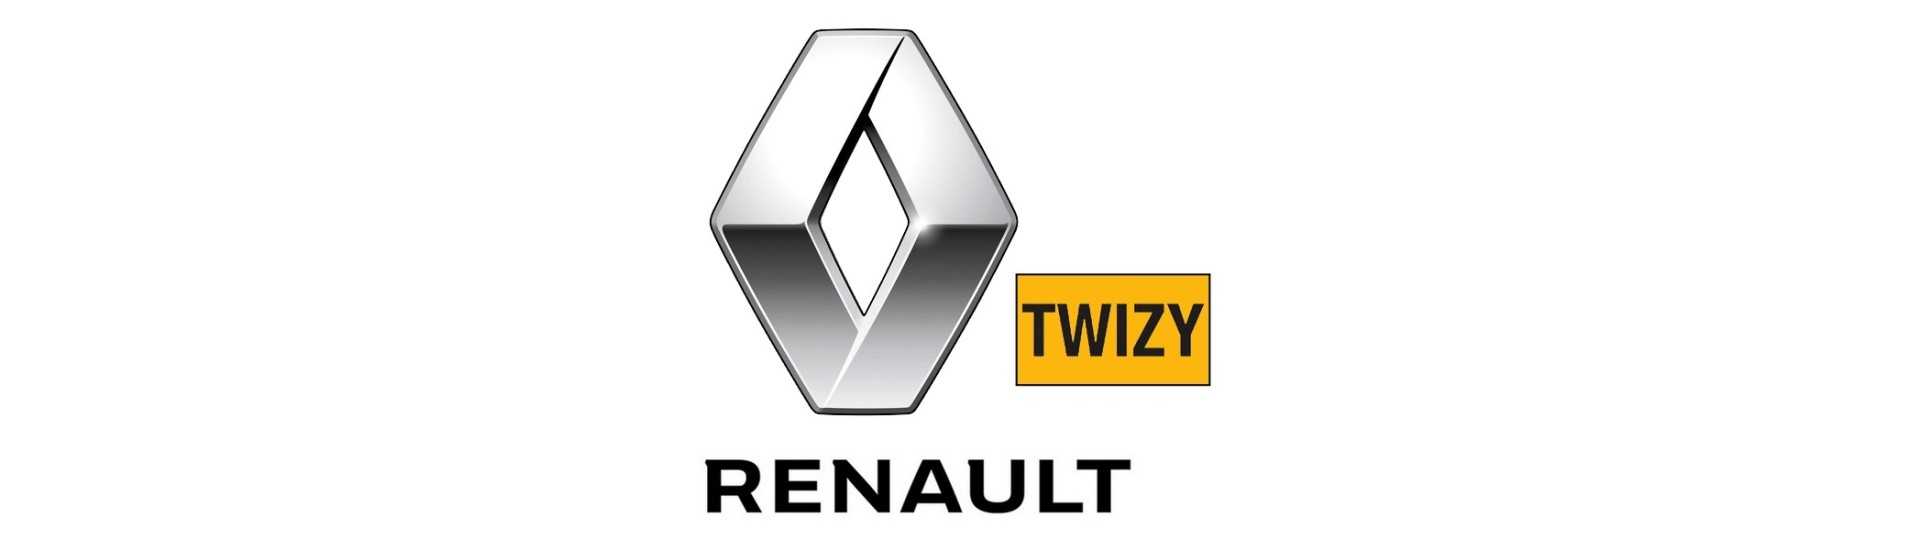 Miglior prezzo leva freno a mano per auto senza permesso Renault